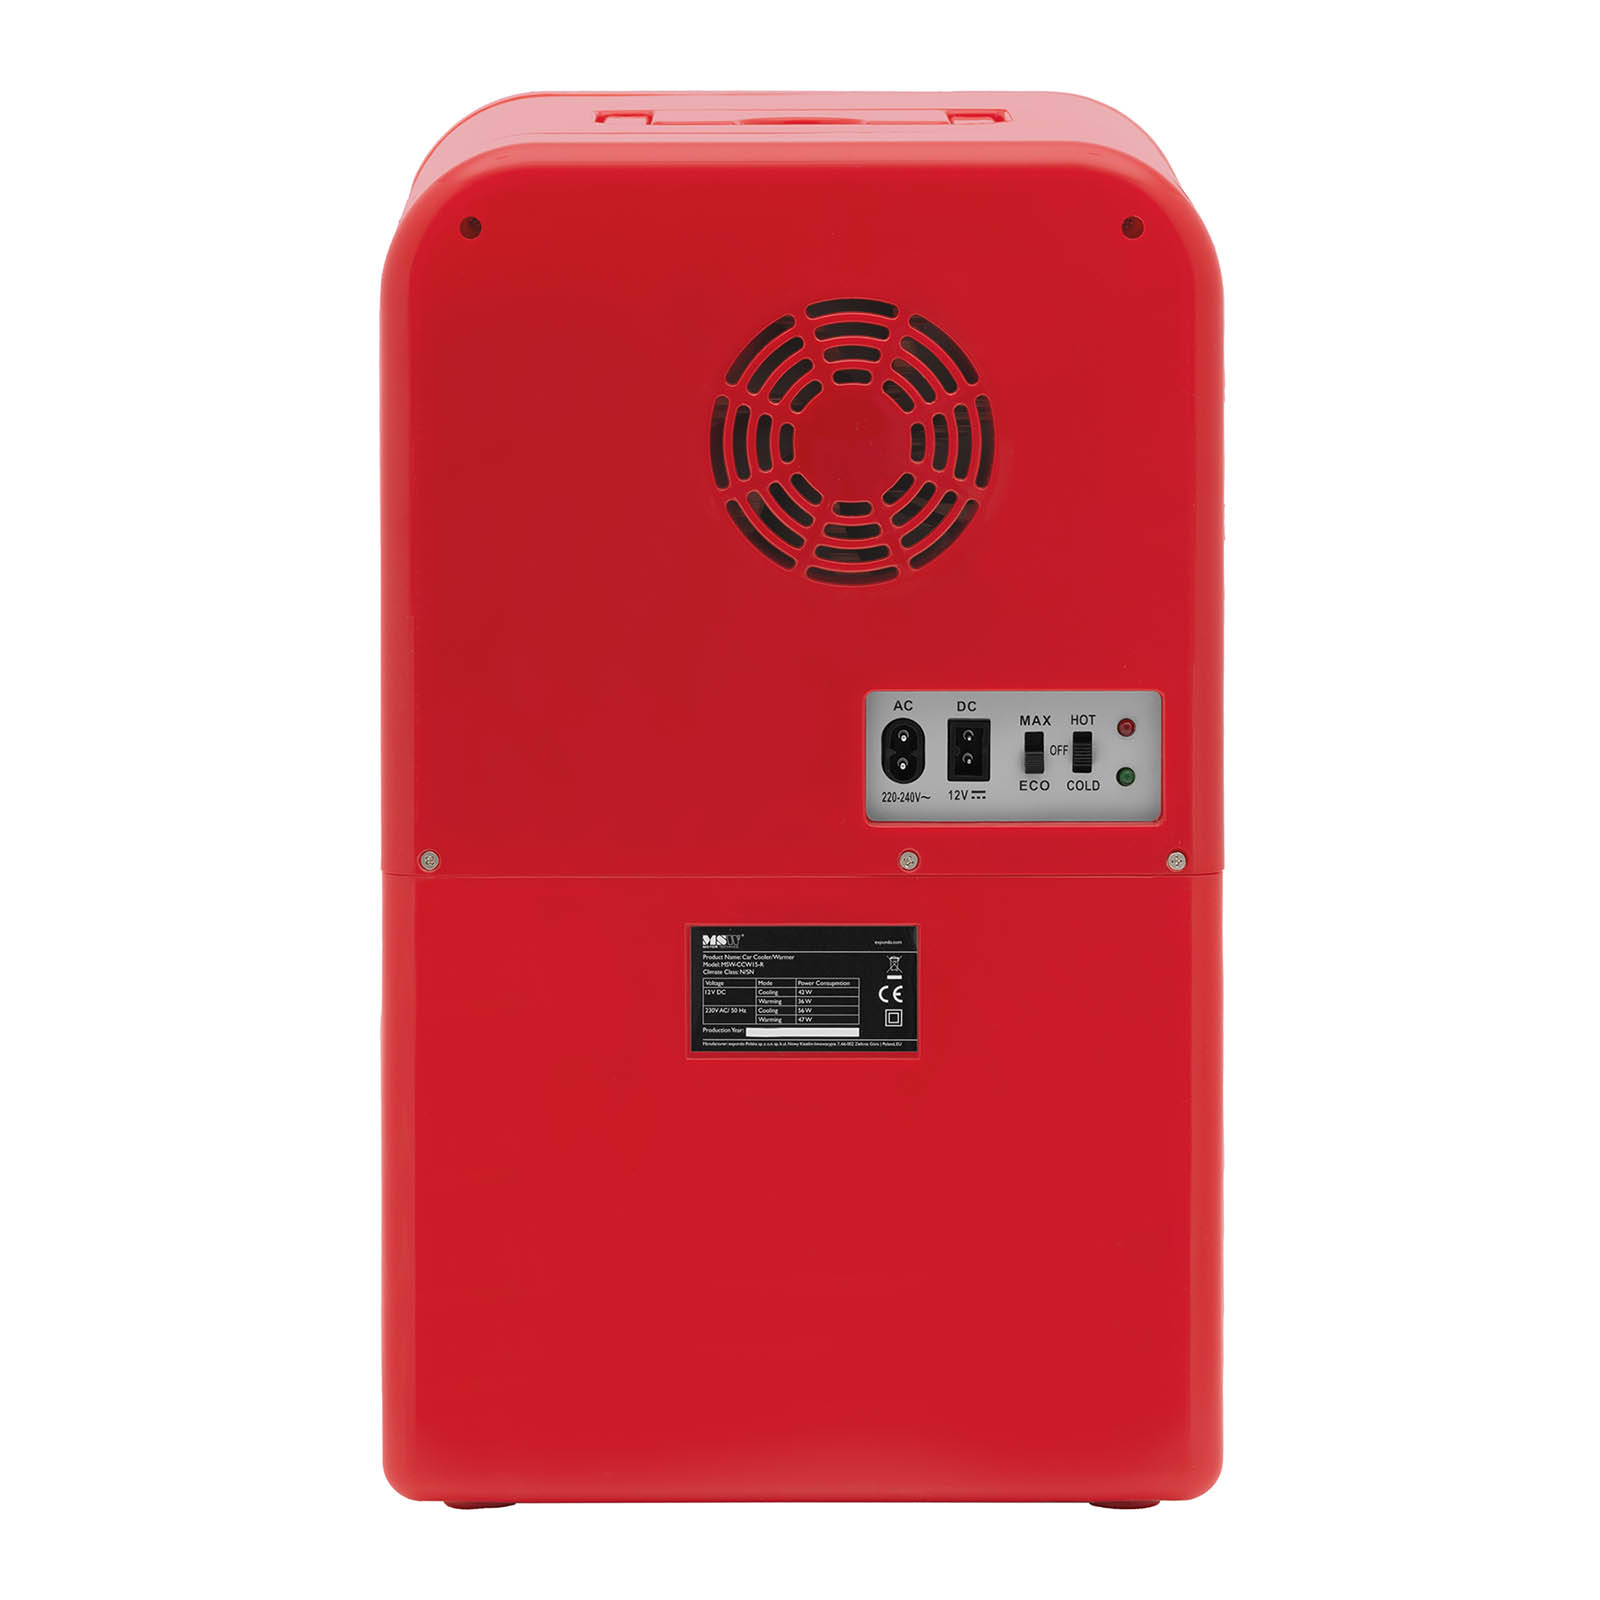 Mini frigorífico para carros 12 V / 230 V - 2 em 1 com função de aquecimento - 15 l - vermelho